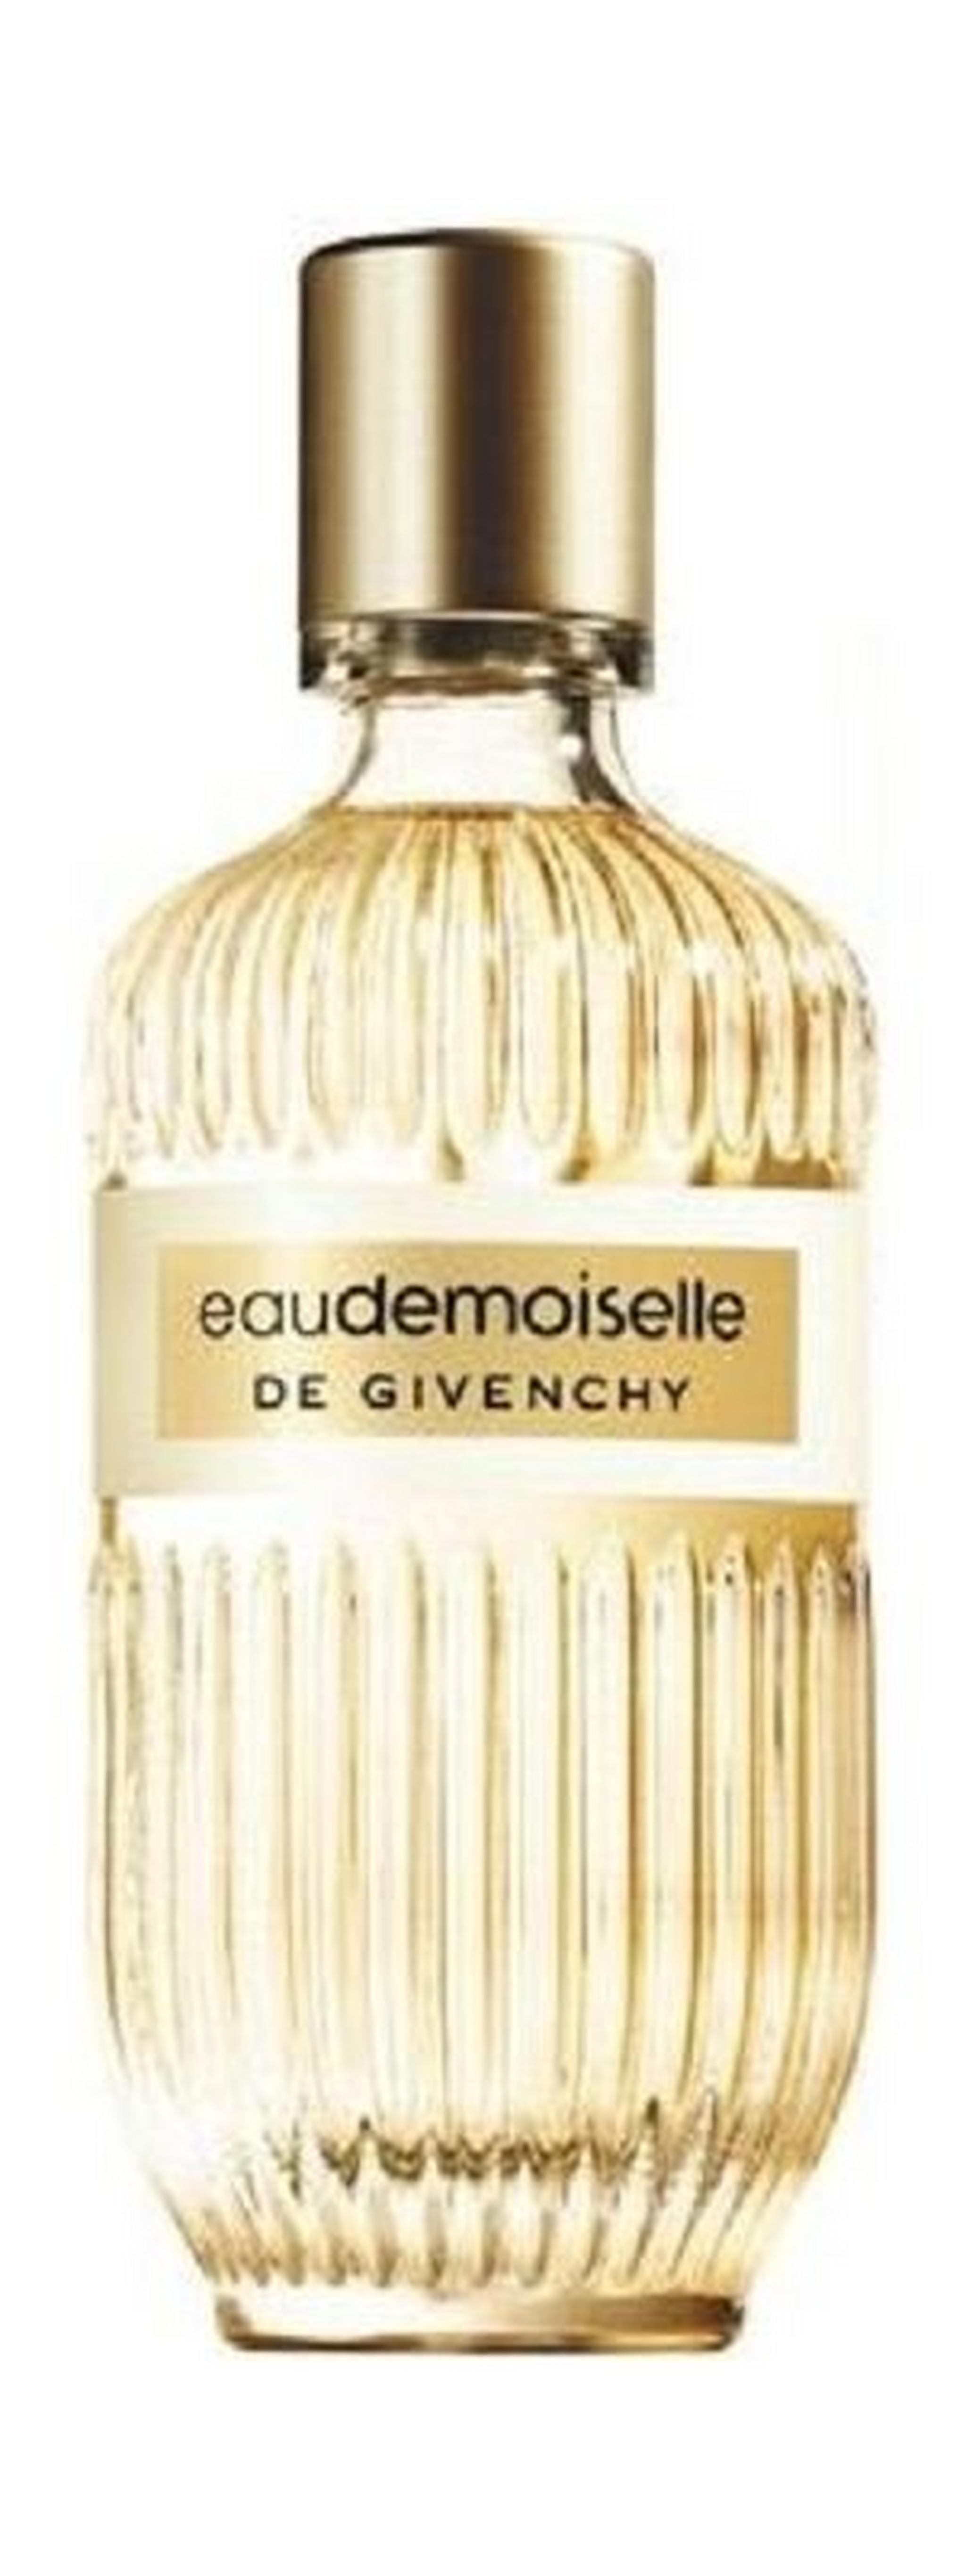 Givenchy Eau Demoiselle De Givenchy for Women 50ML - EDT